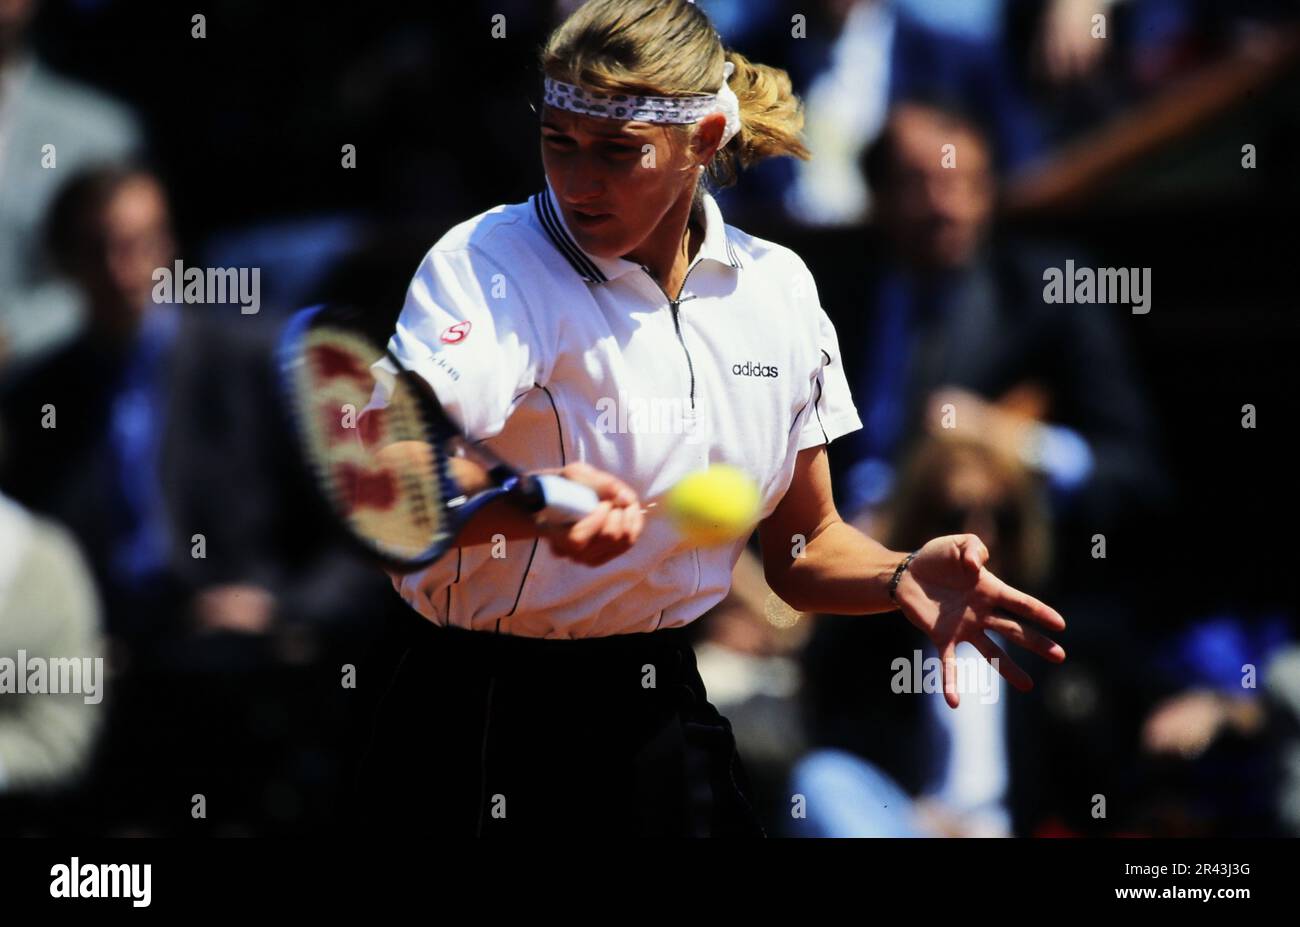 Stefanie Steffi Graf, deutsche Tennisspielerin, auf dem Tennisplatz in Aktion. Stockfoto